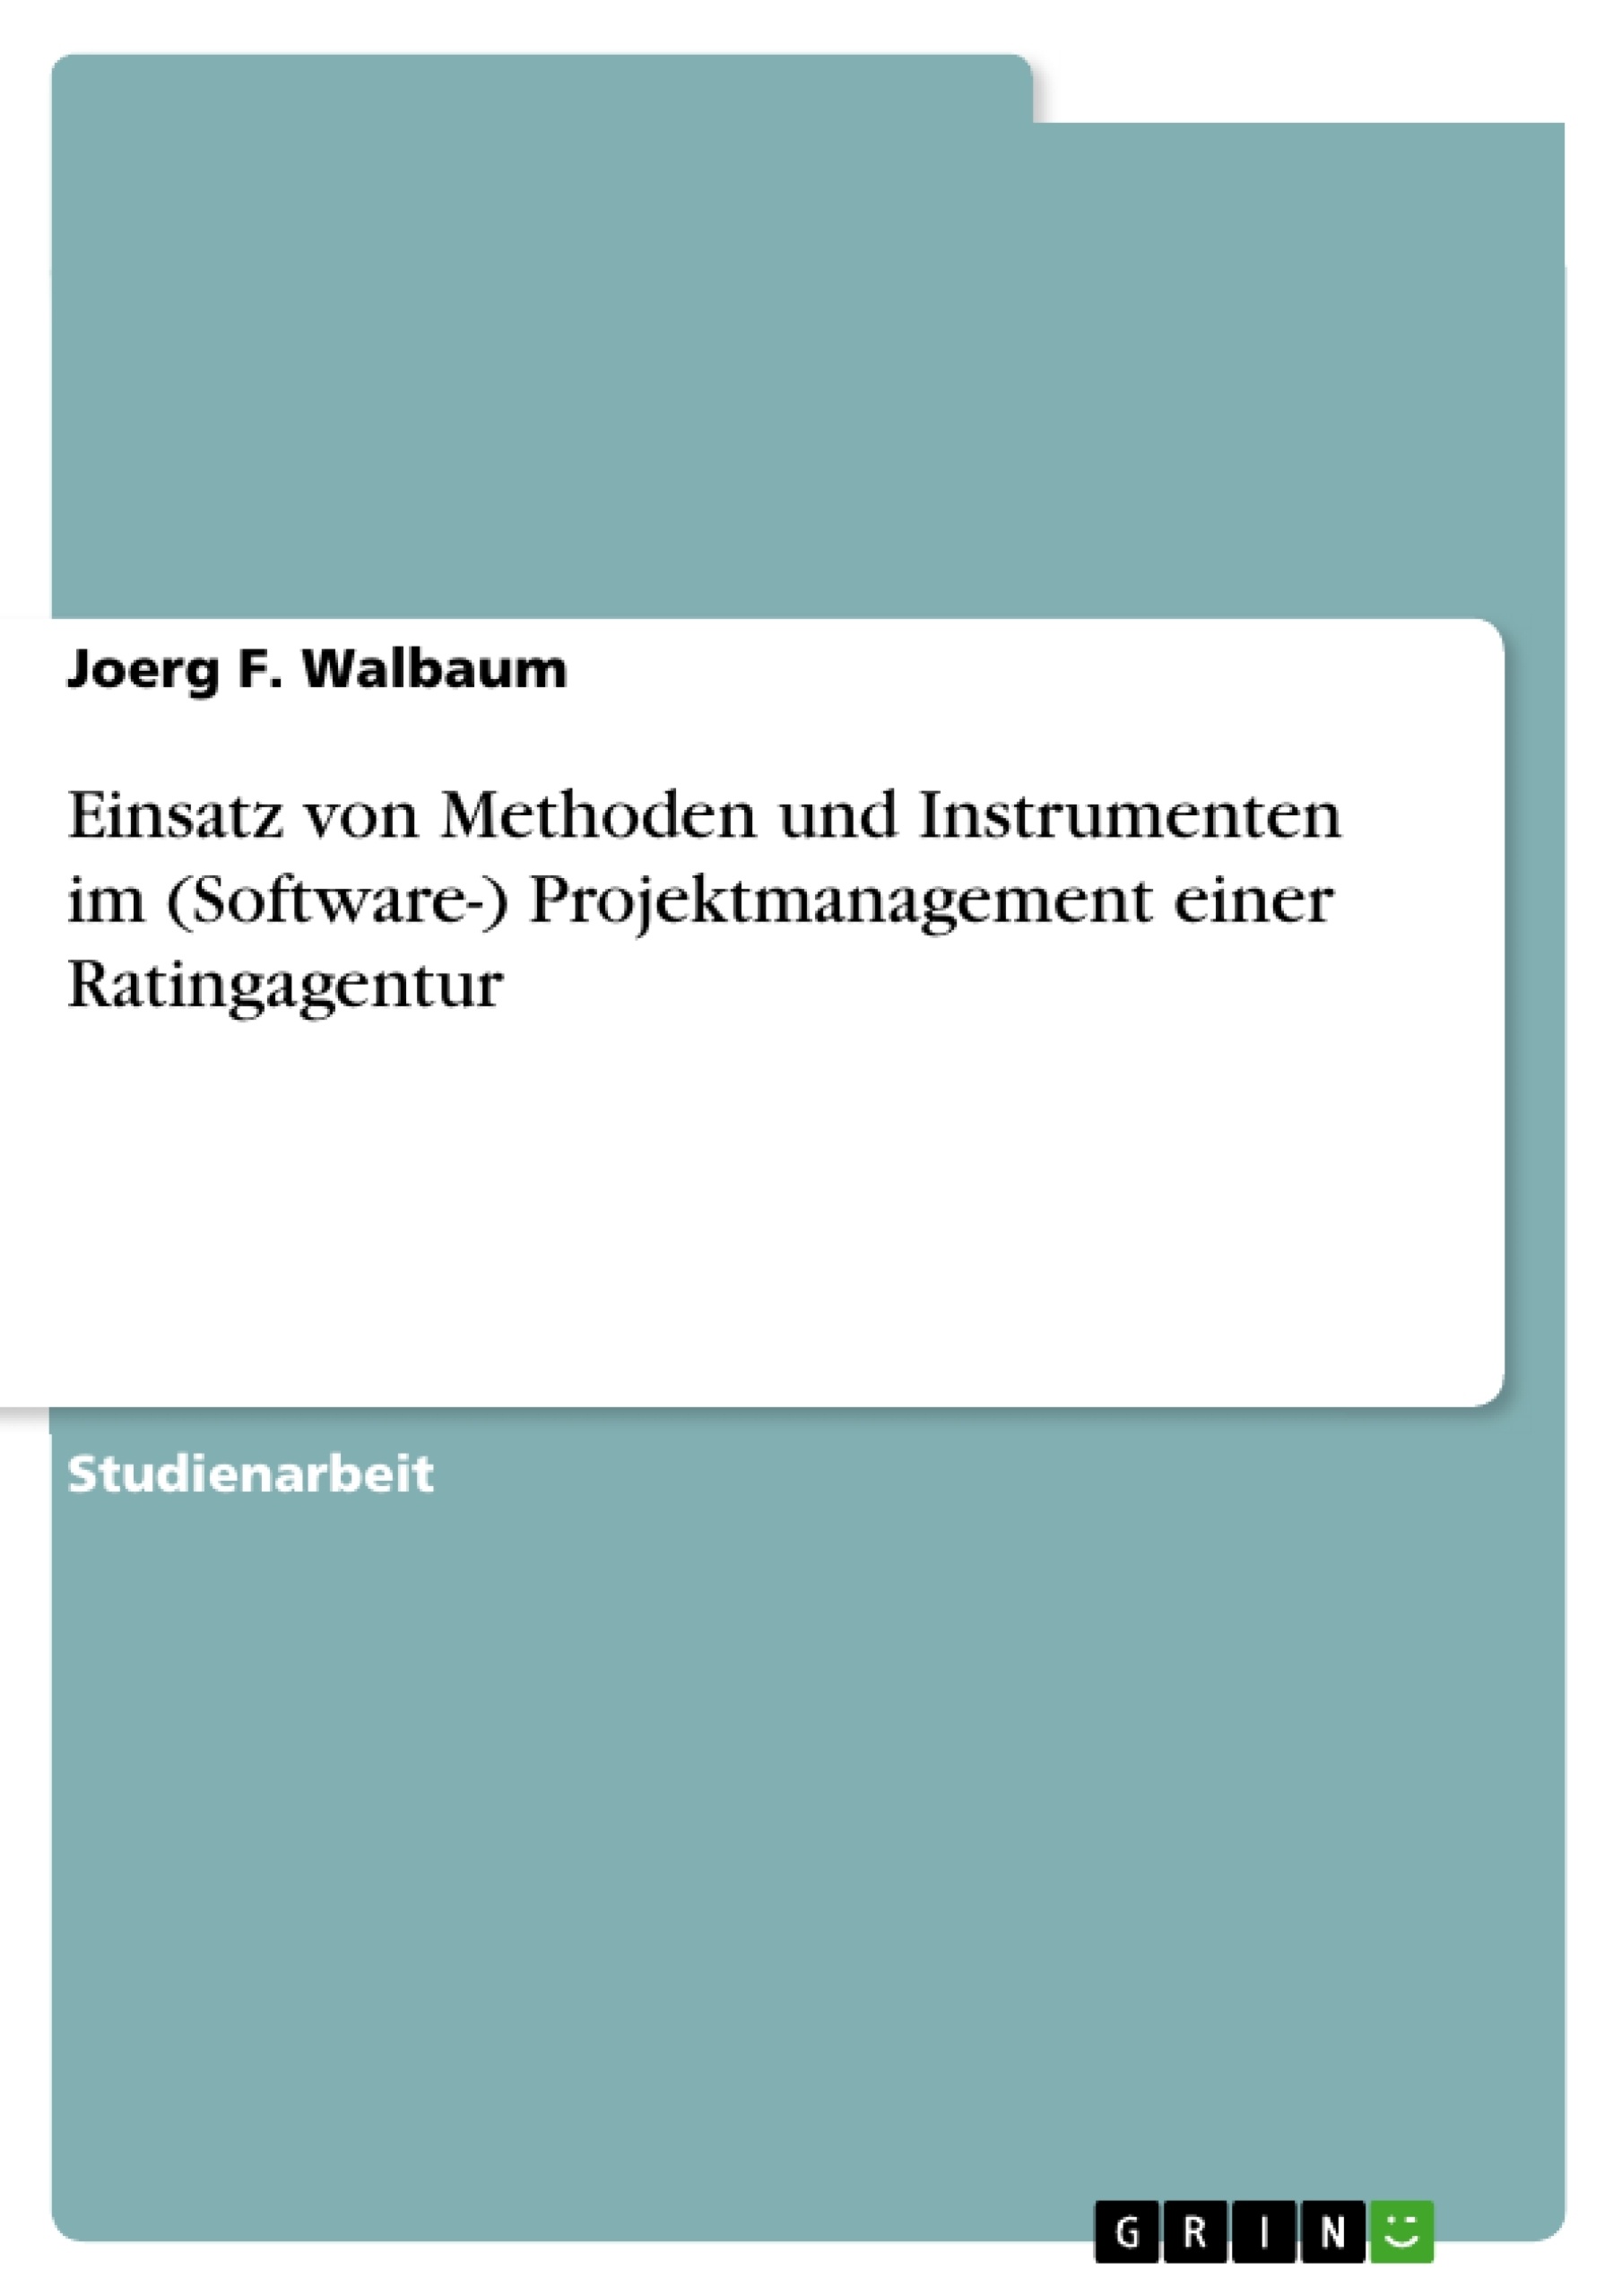 Title: Einsatz von Methoden und Instrumenten im (Software-) Projektmanagement einer Ratingagentur